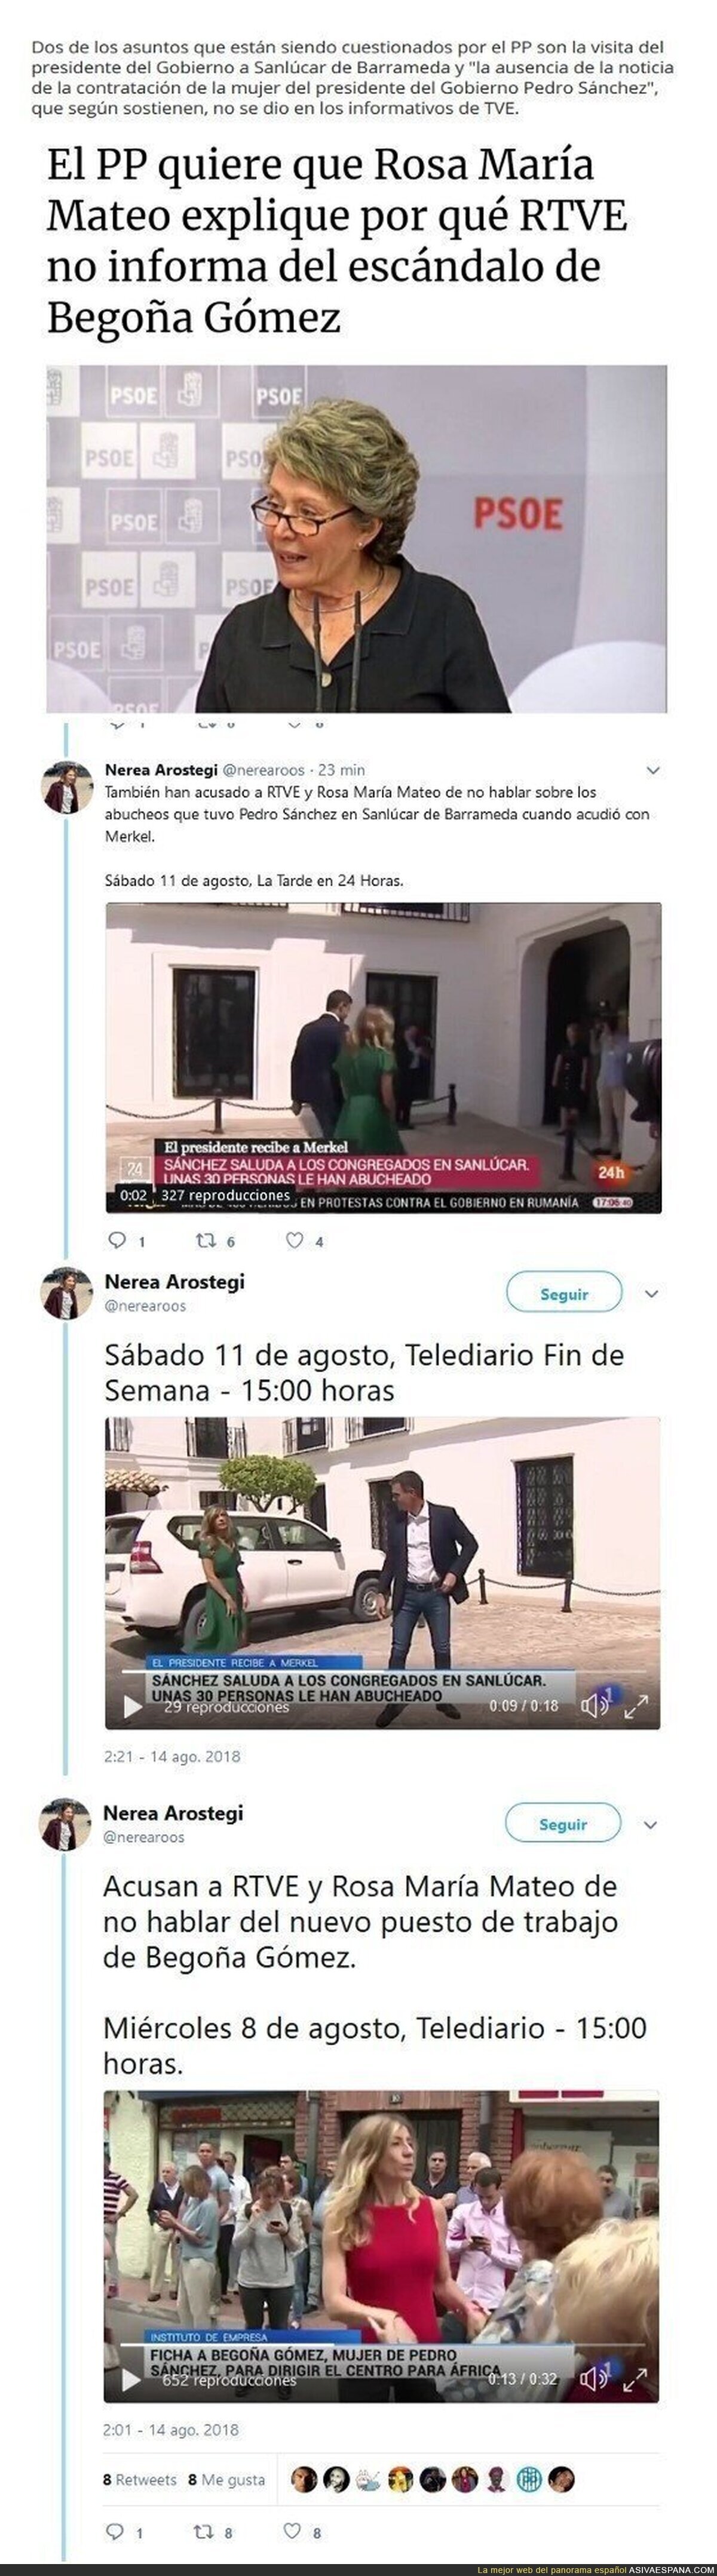 El PP acusa a RTVE de no informar sobre los abucheos a Sáncez ni la contratacíon de Begoña Gómez.